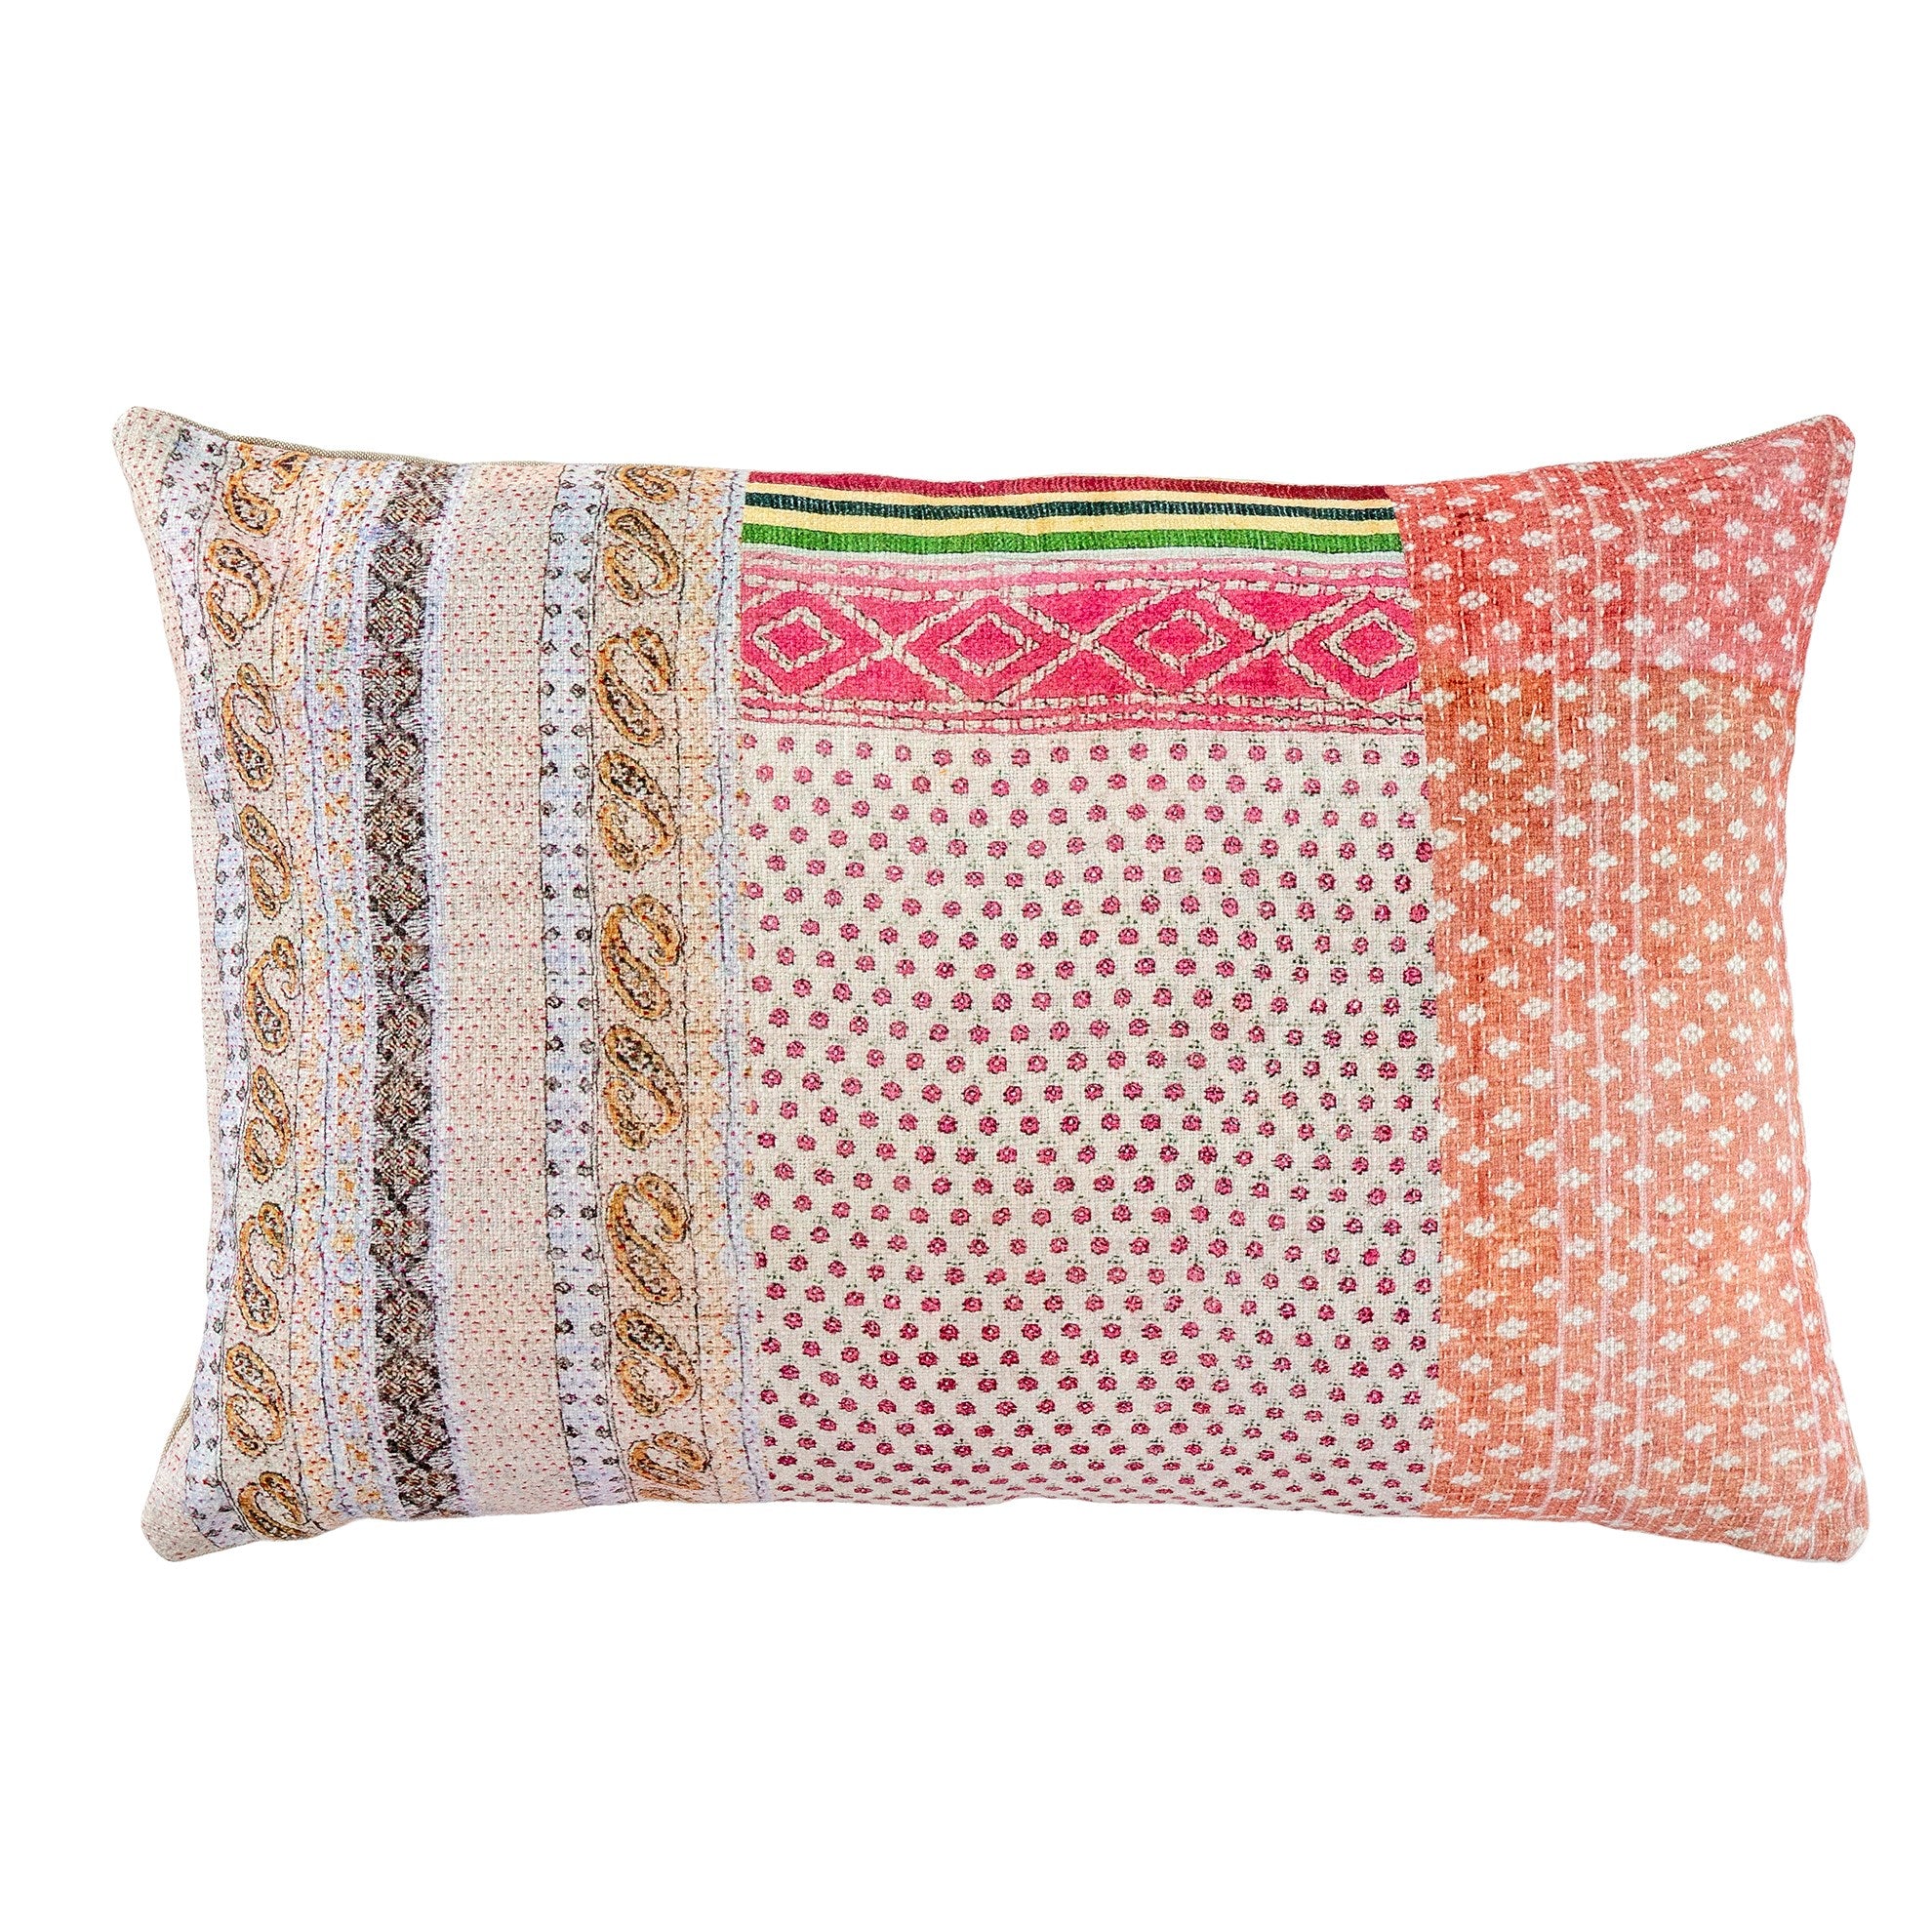 Kantha Printed Pillow - Pink Flowers Multi